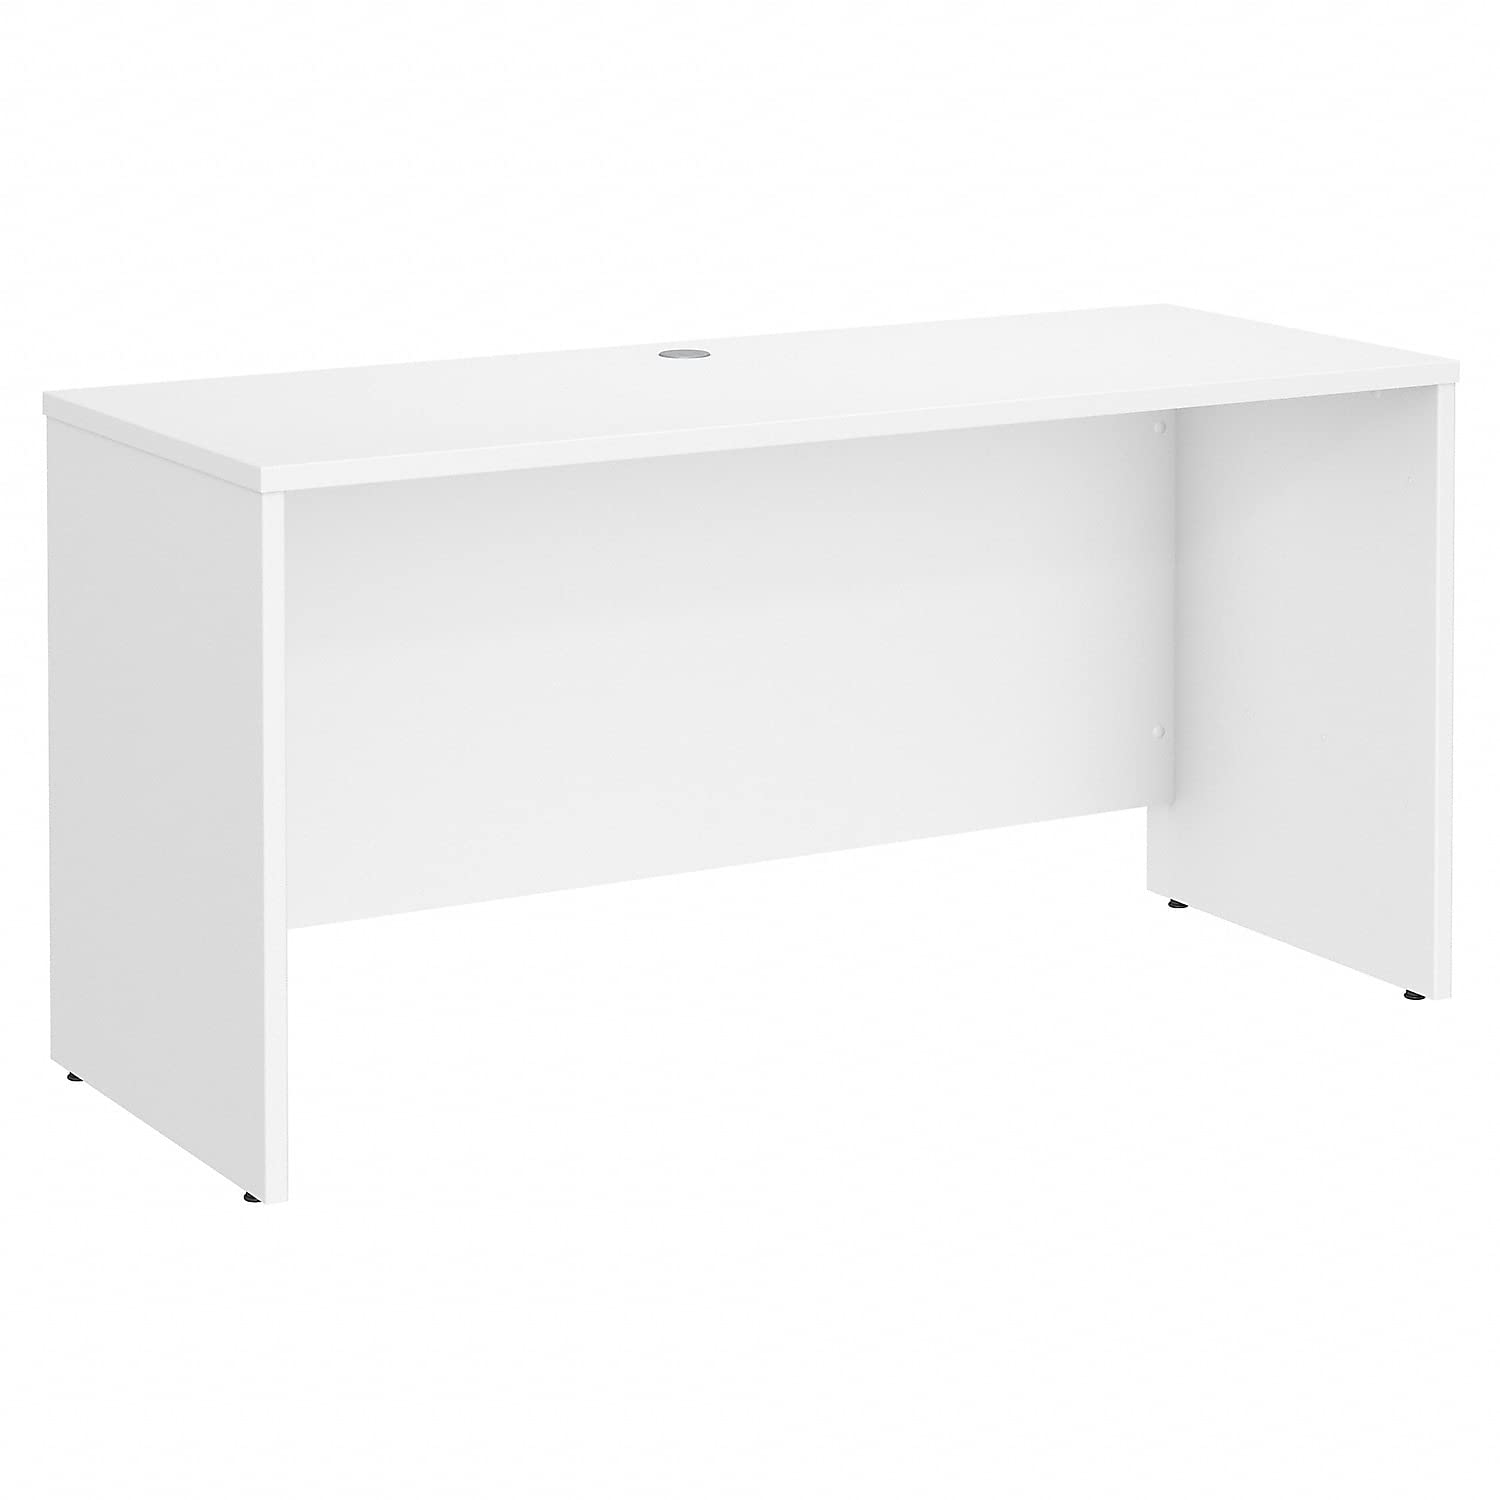 Bush Business Furniture सफेद रंग में स्टूडियो सी 60W x 24D क्रेडेंज़ा डेस्क